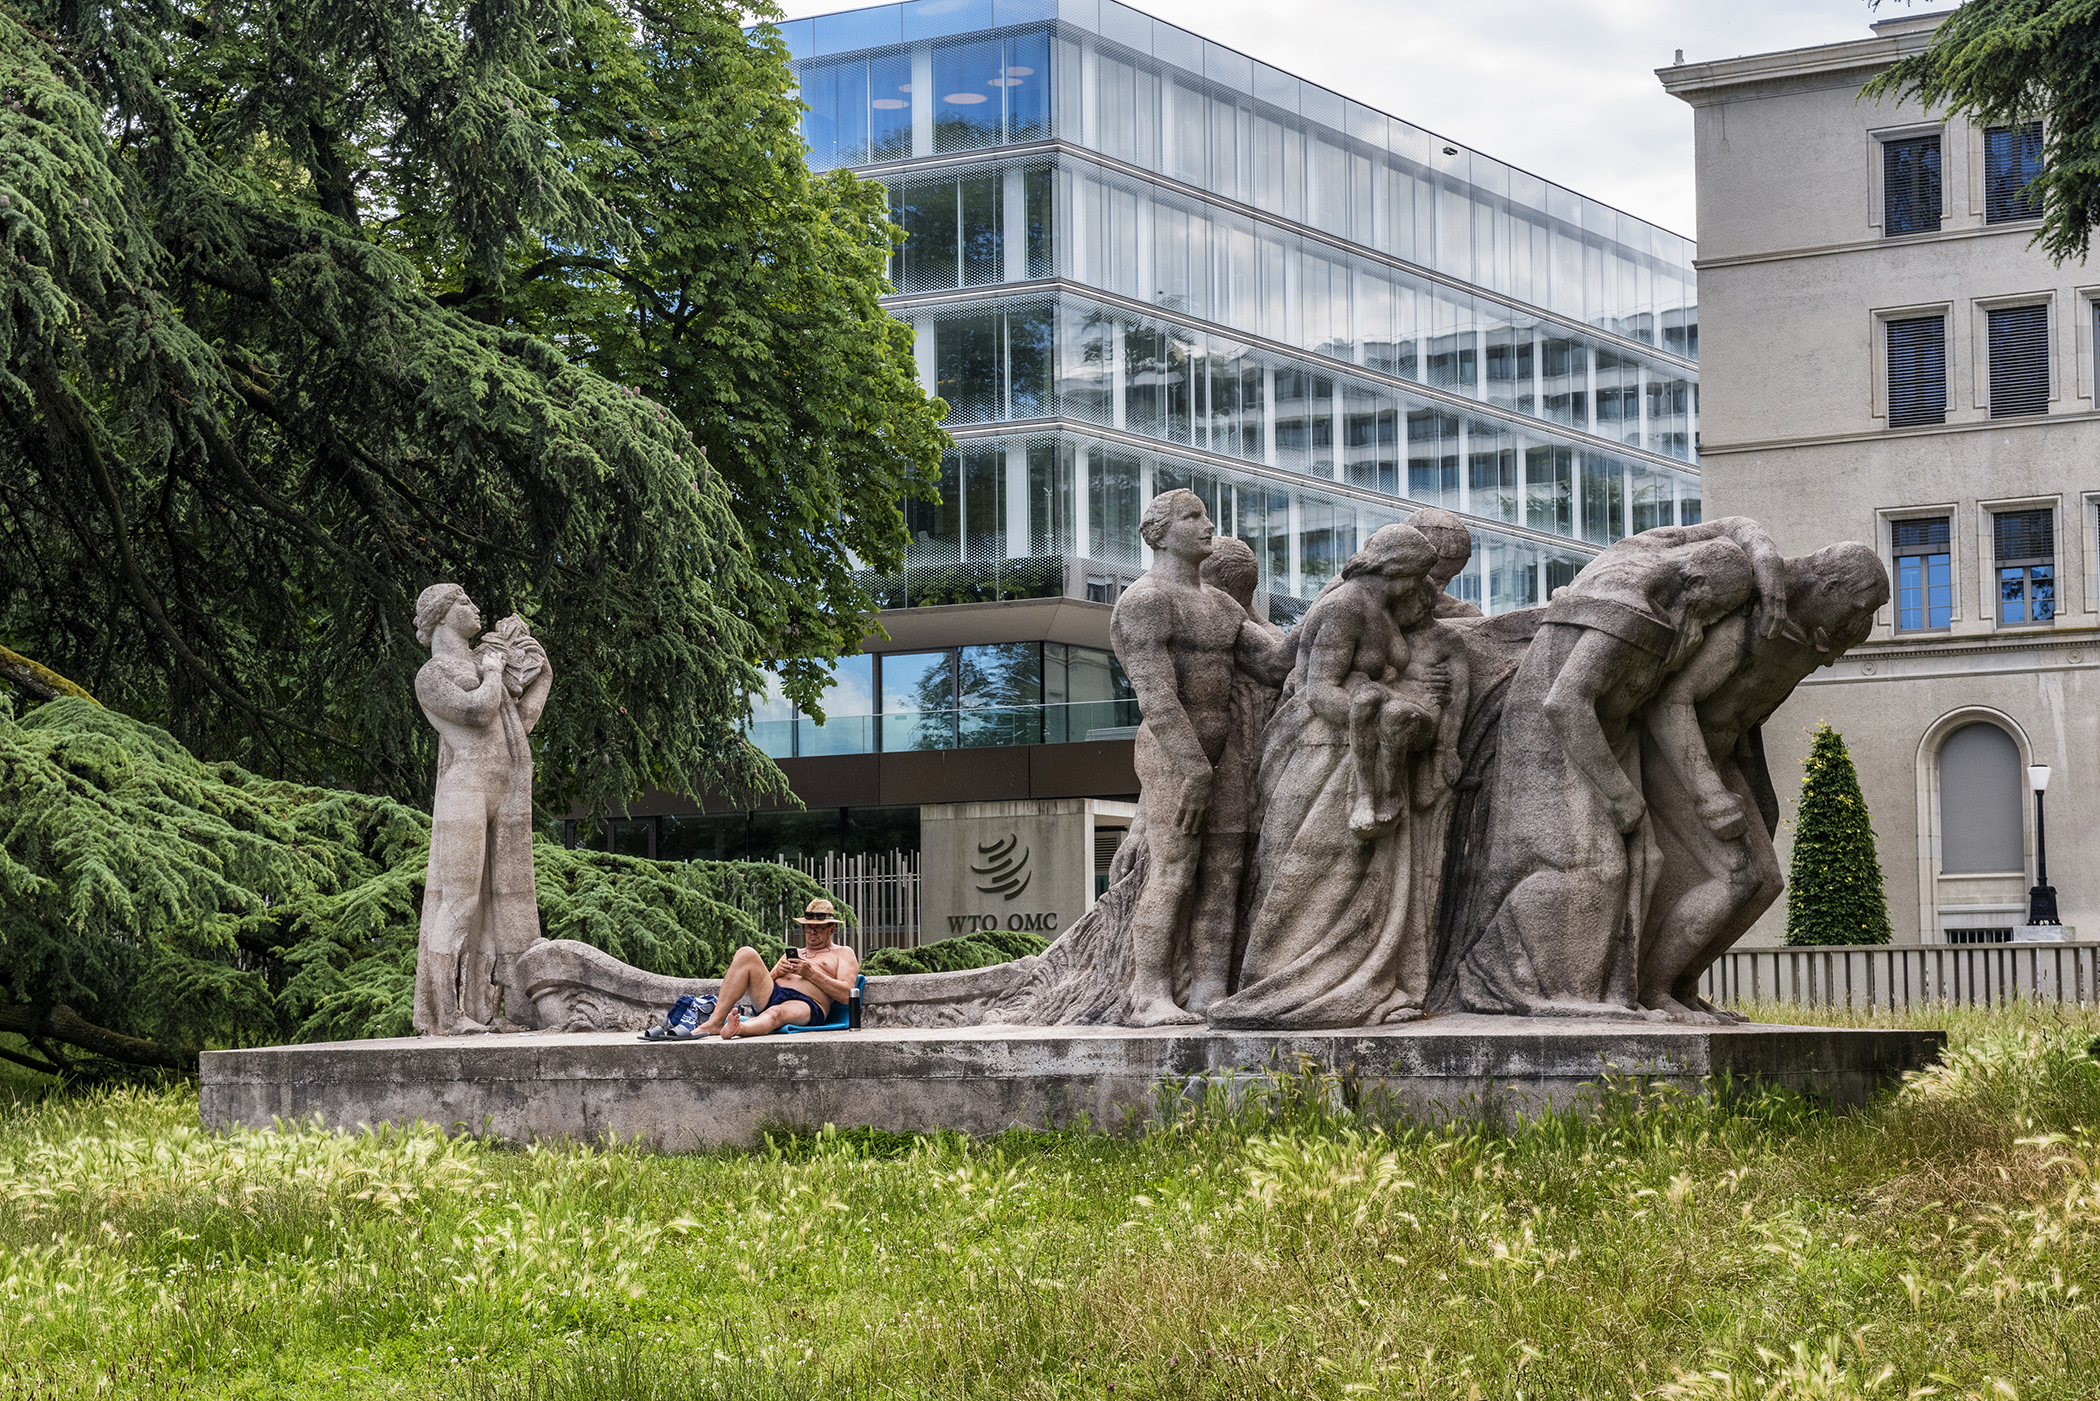 WTO本部前にある彫刻は、日光浴に最適な場所だ